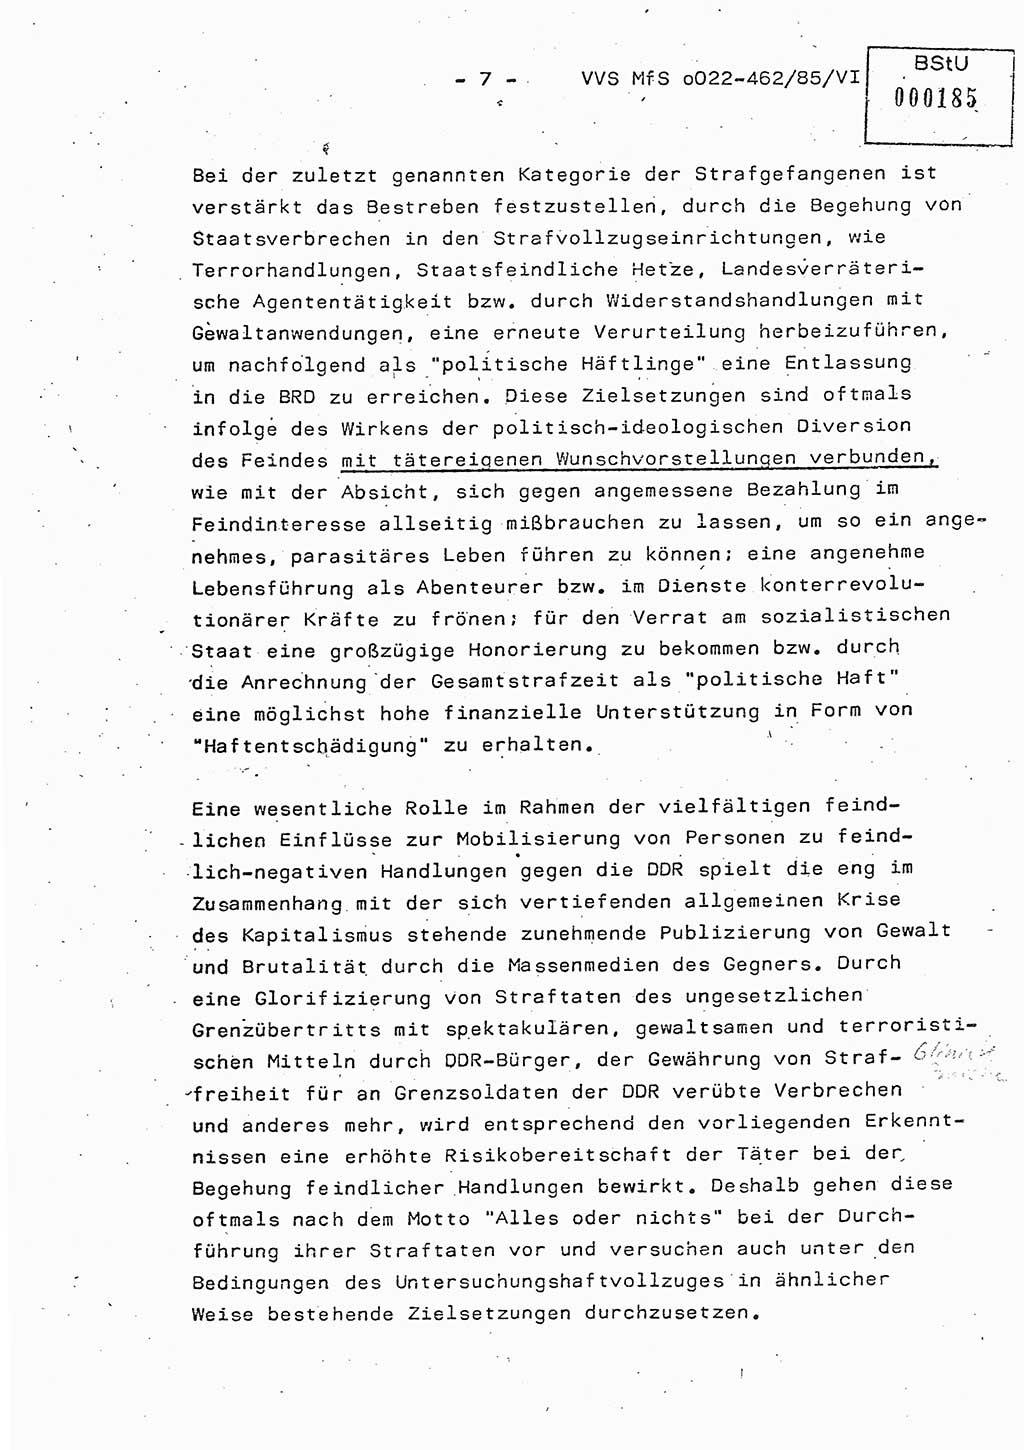 Der Untersuchungshaftvollzug im MfS, Schulungsmaterial Teil Ⅵ, Ministerium für Staatssicherheit [Deutsche Demokratische Republik (DDR)], Abteilung (Abt.) ⅩⅣ, Vertrauliche Verschlußsache (VVS) o022-462/85/Ⅵ, Berlin 1985, Seite 7 (Sch.-Mat. Ⅵ MfS DDR Abt. ⅩⅣ VVS o022-462/85/Ⅵ 1985, S. 7)